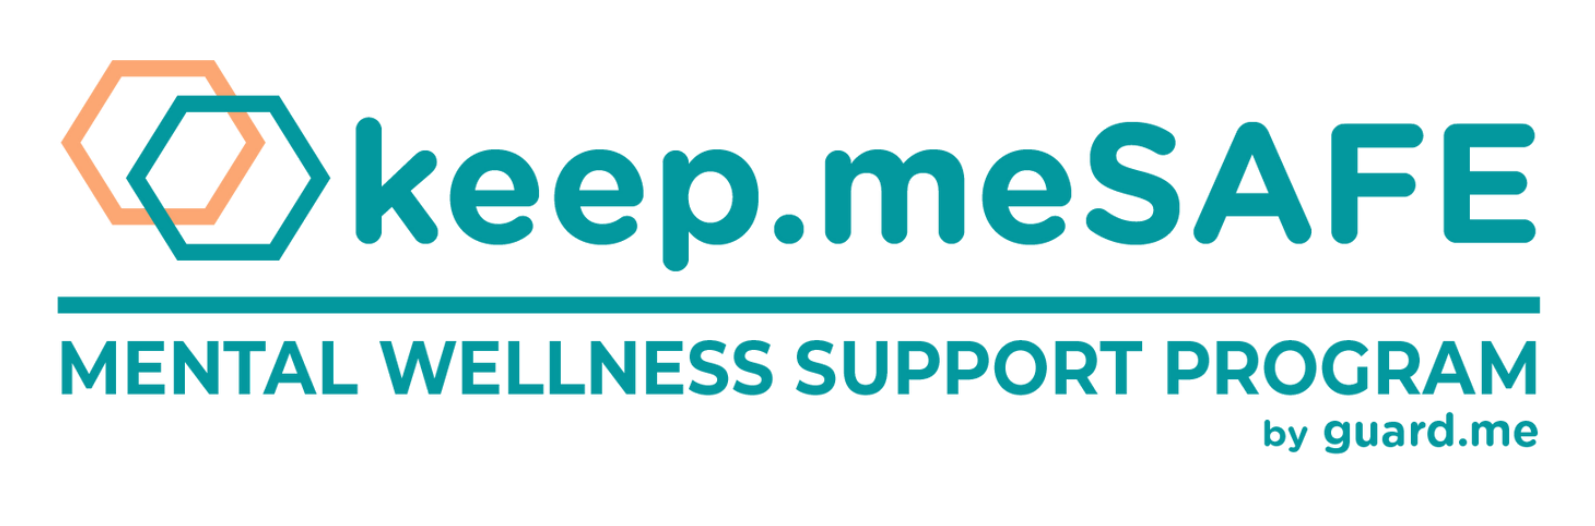 keep.meSAFE Logo